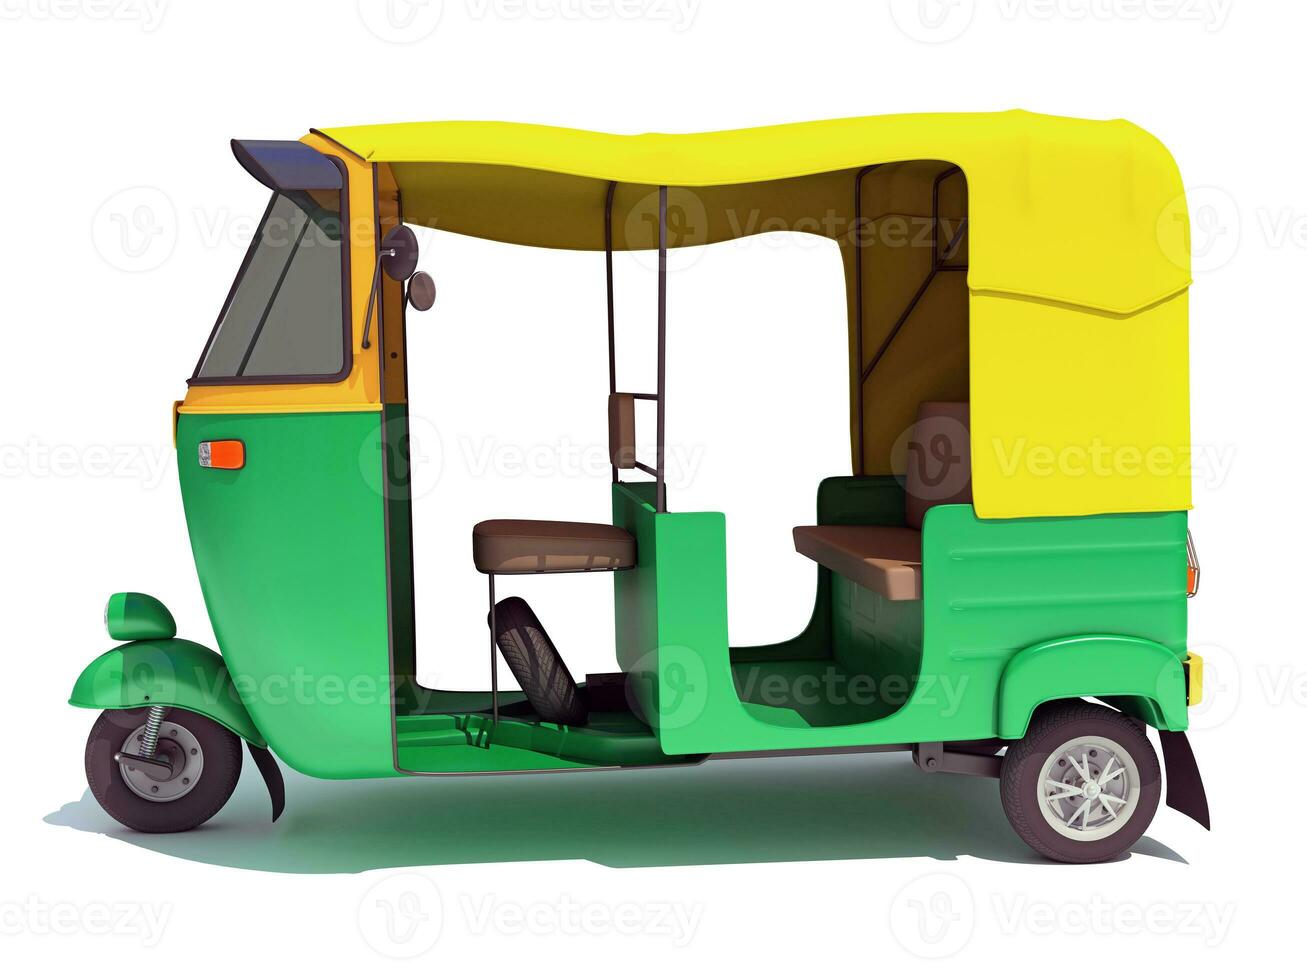 bil riksha tuktuk 3d tolkning på vit bakgrund foto